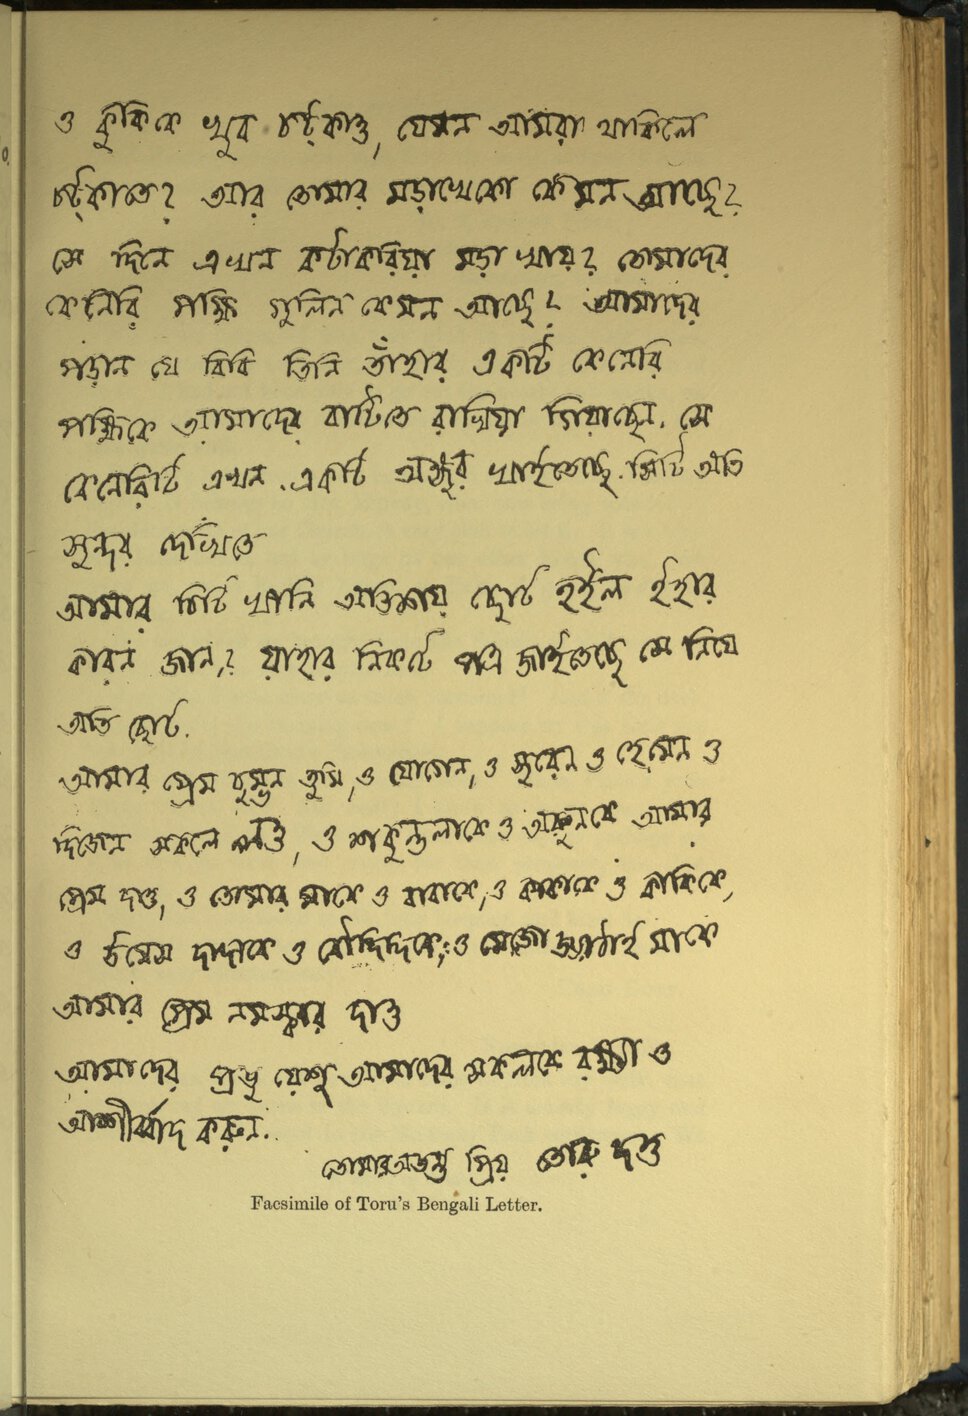 Letter in neatly-written Bengali script.